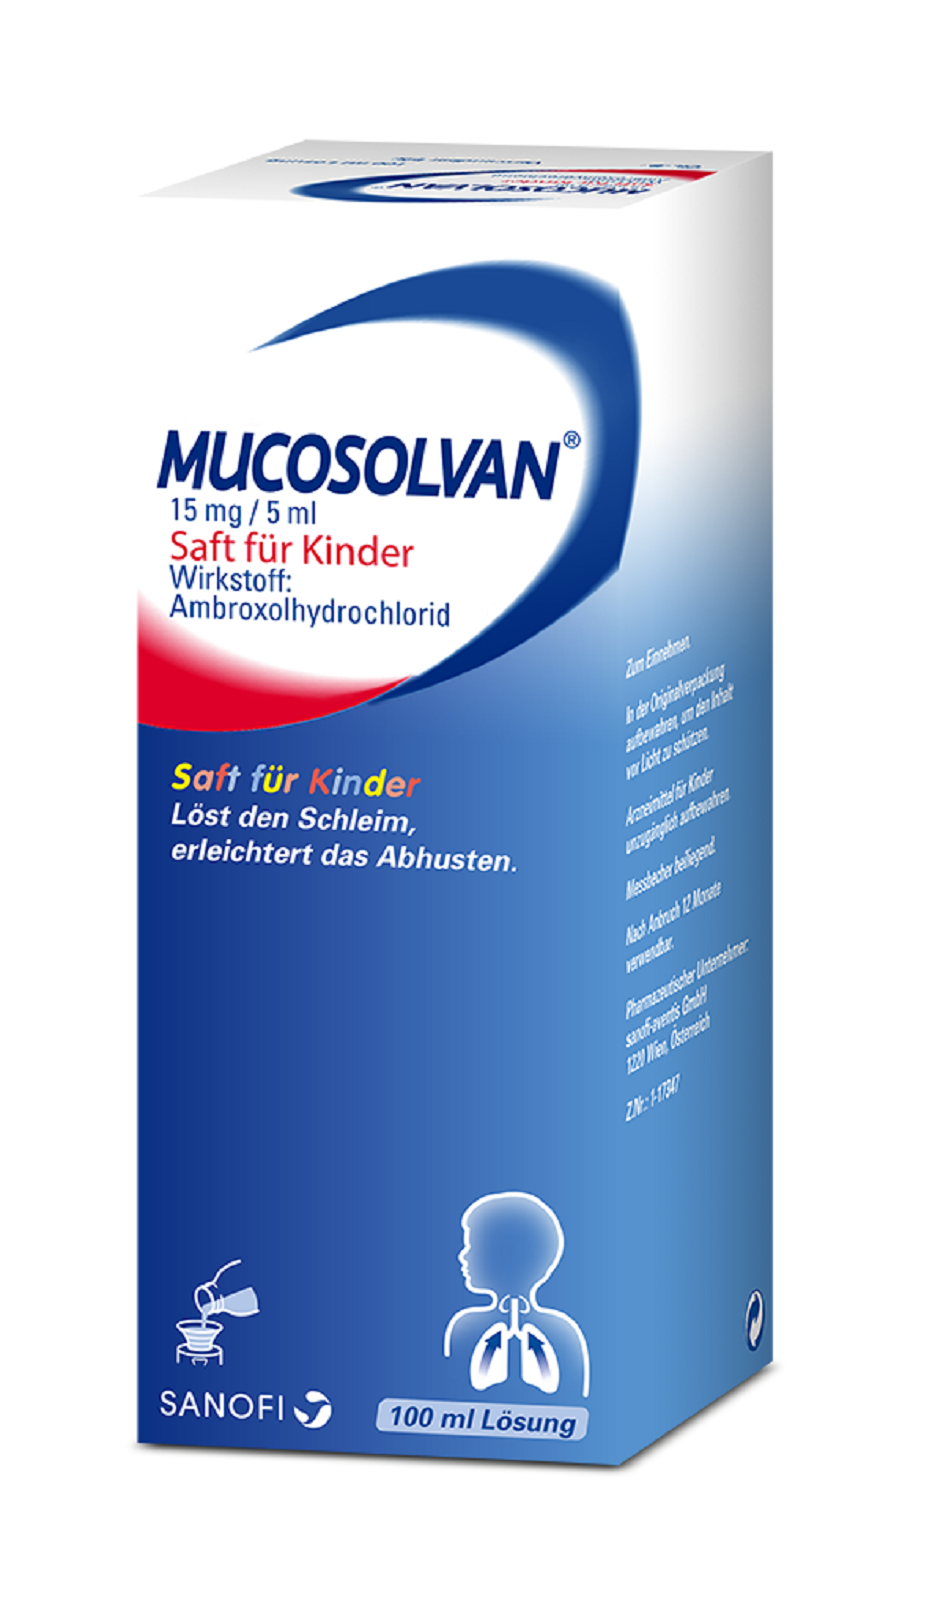 Mucosolvan® 15 mg / 5 ml - Saft für Kinder